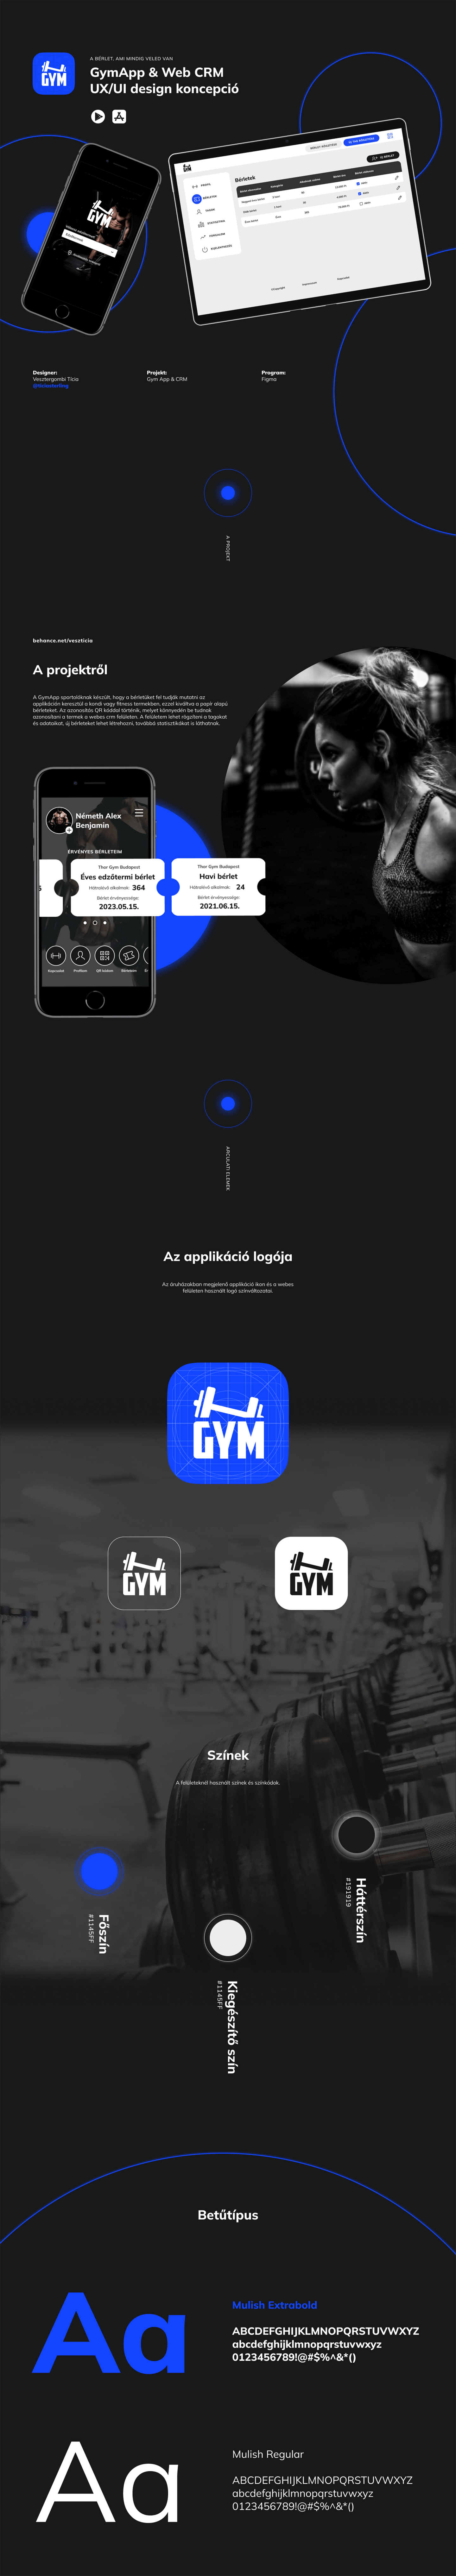 GymApp applikáció UI design